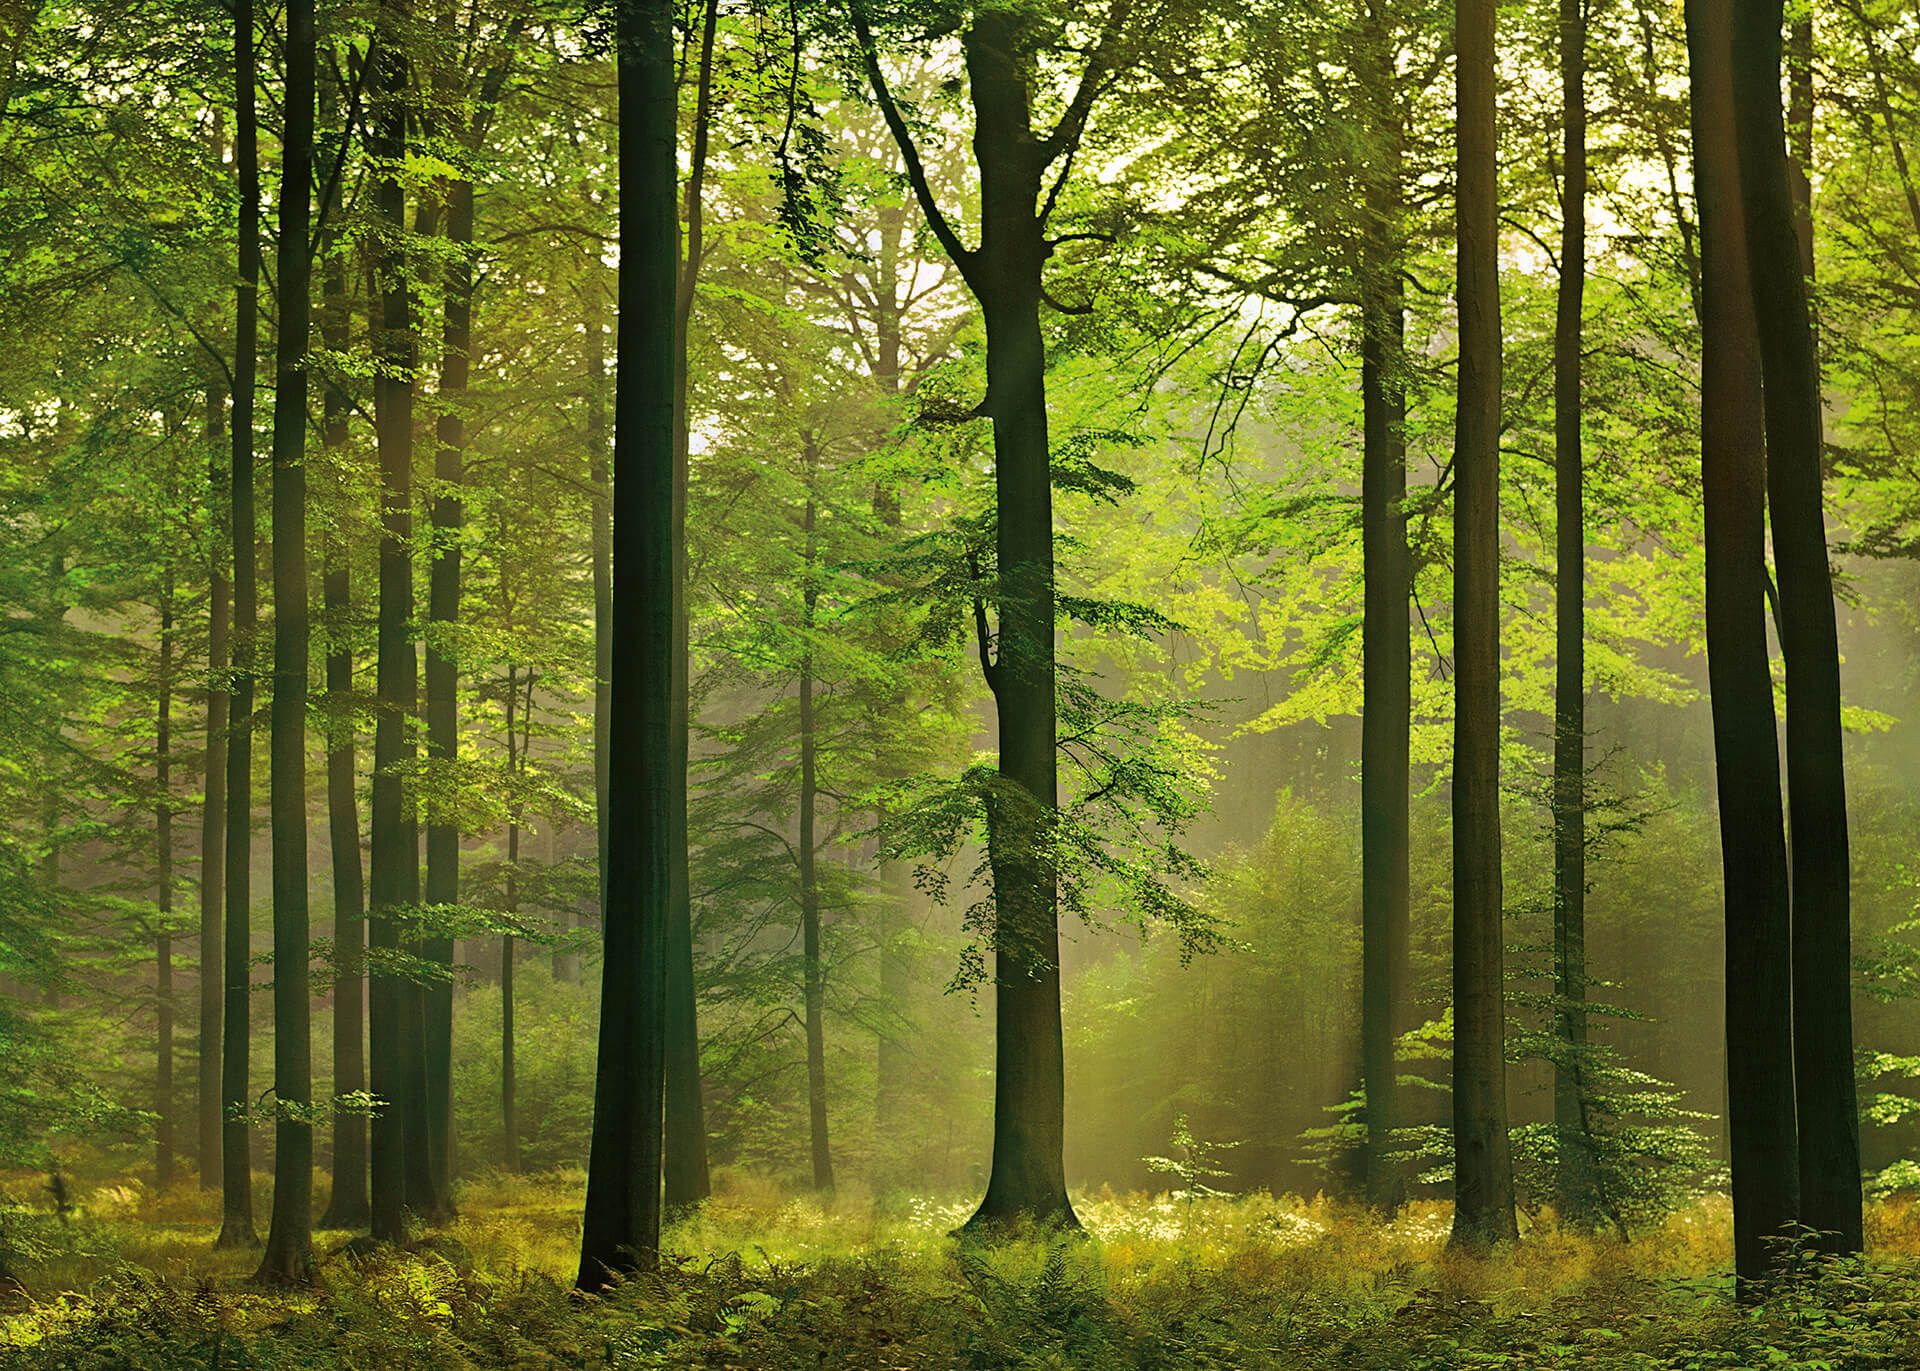 Leinwandbild Wald, grün, 70x50 cm DD123014